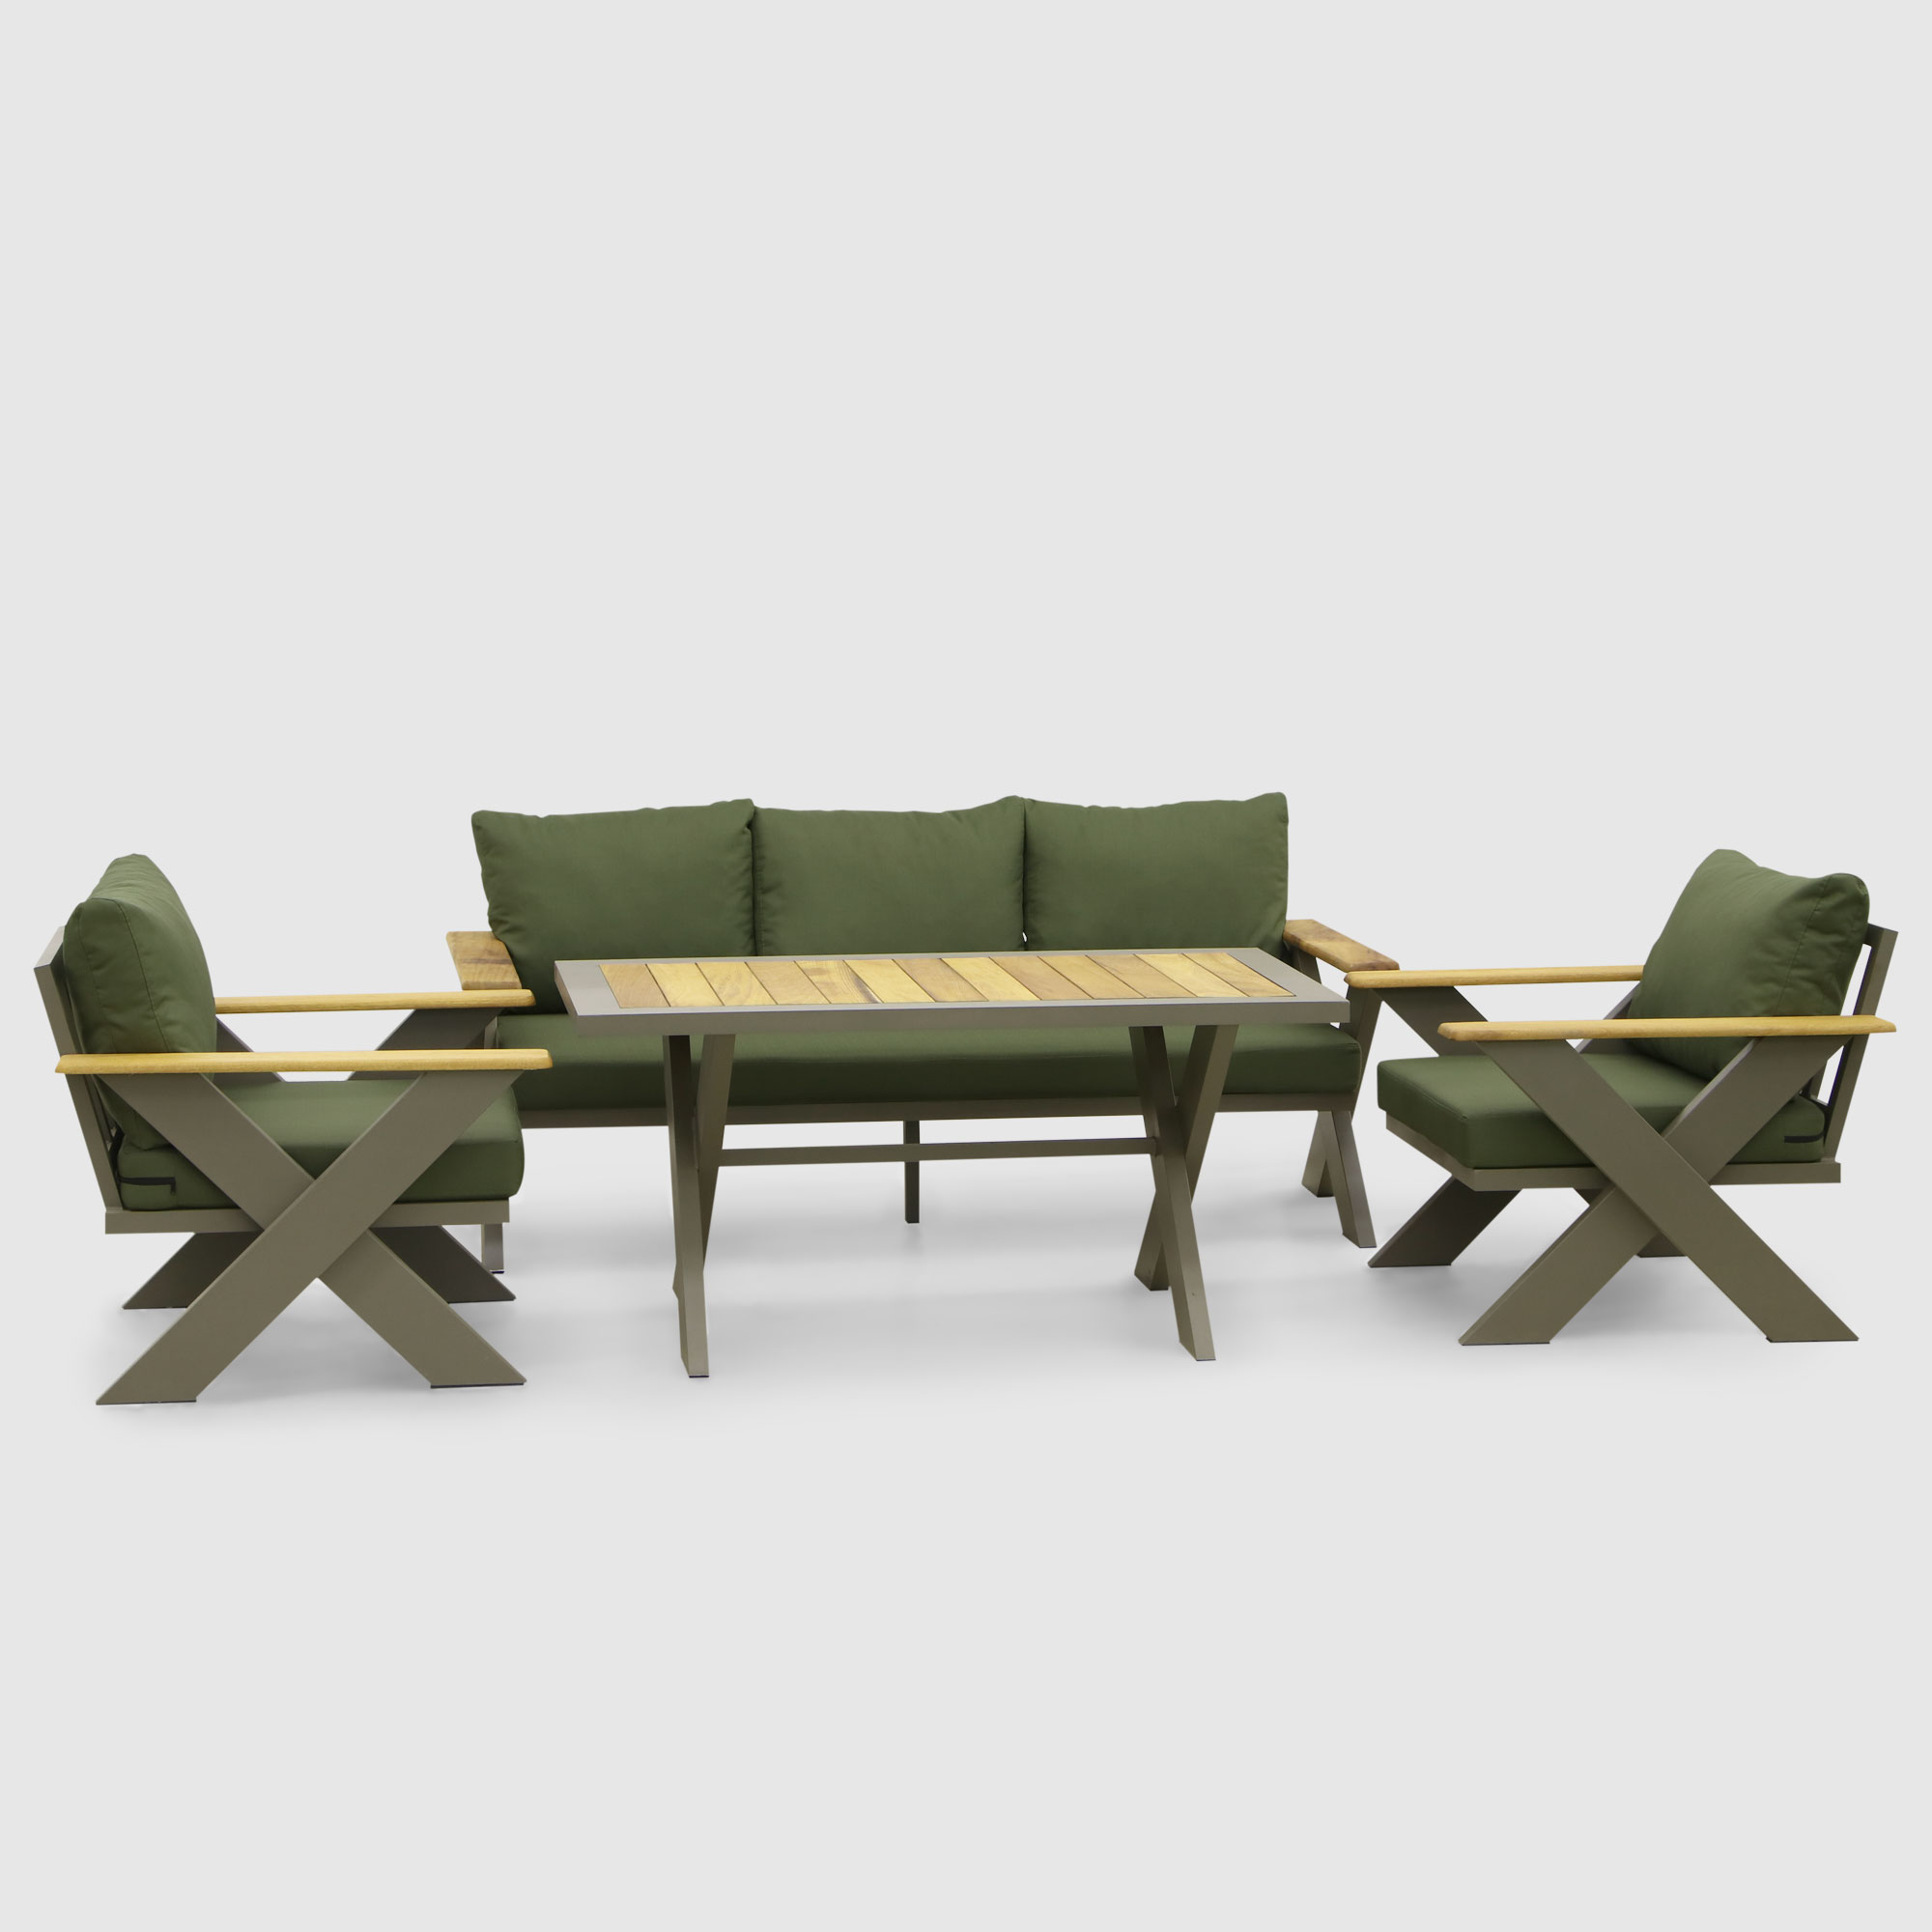 Комплект мебели Emek garden Toledo зеленый 4 предмета, цвет оливковый, размер 170х80х90 - фото 1